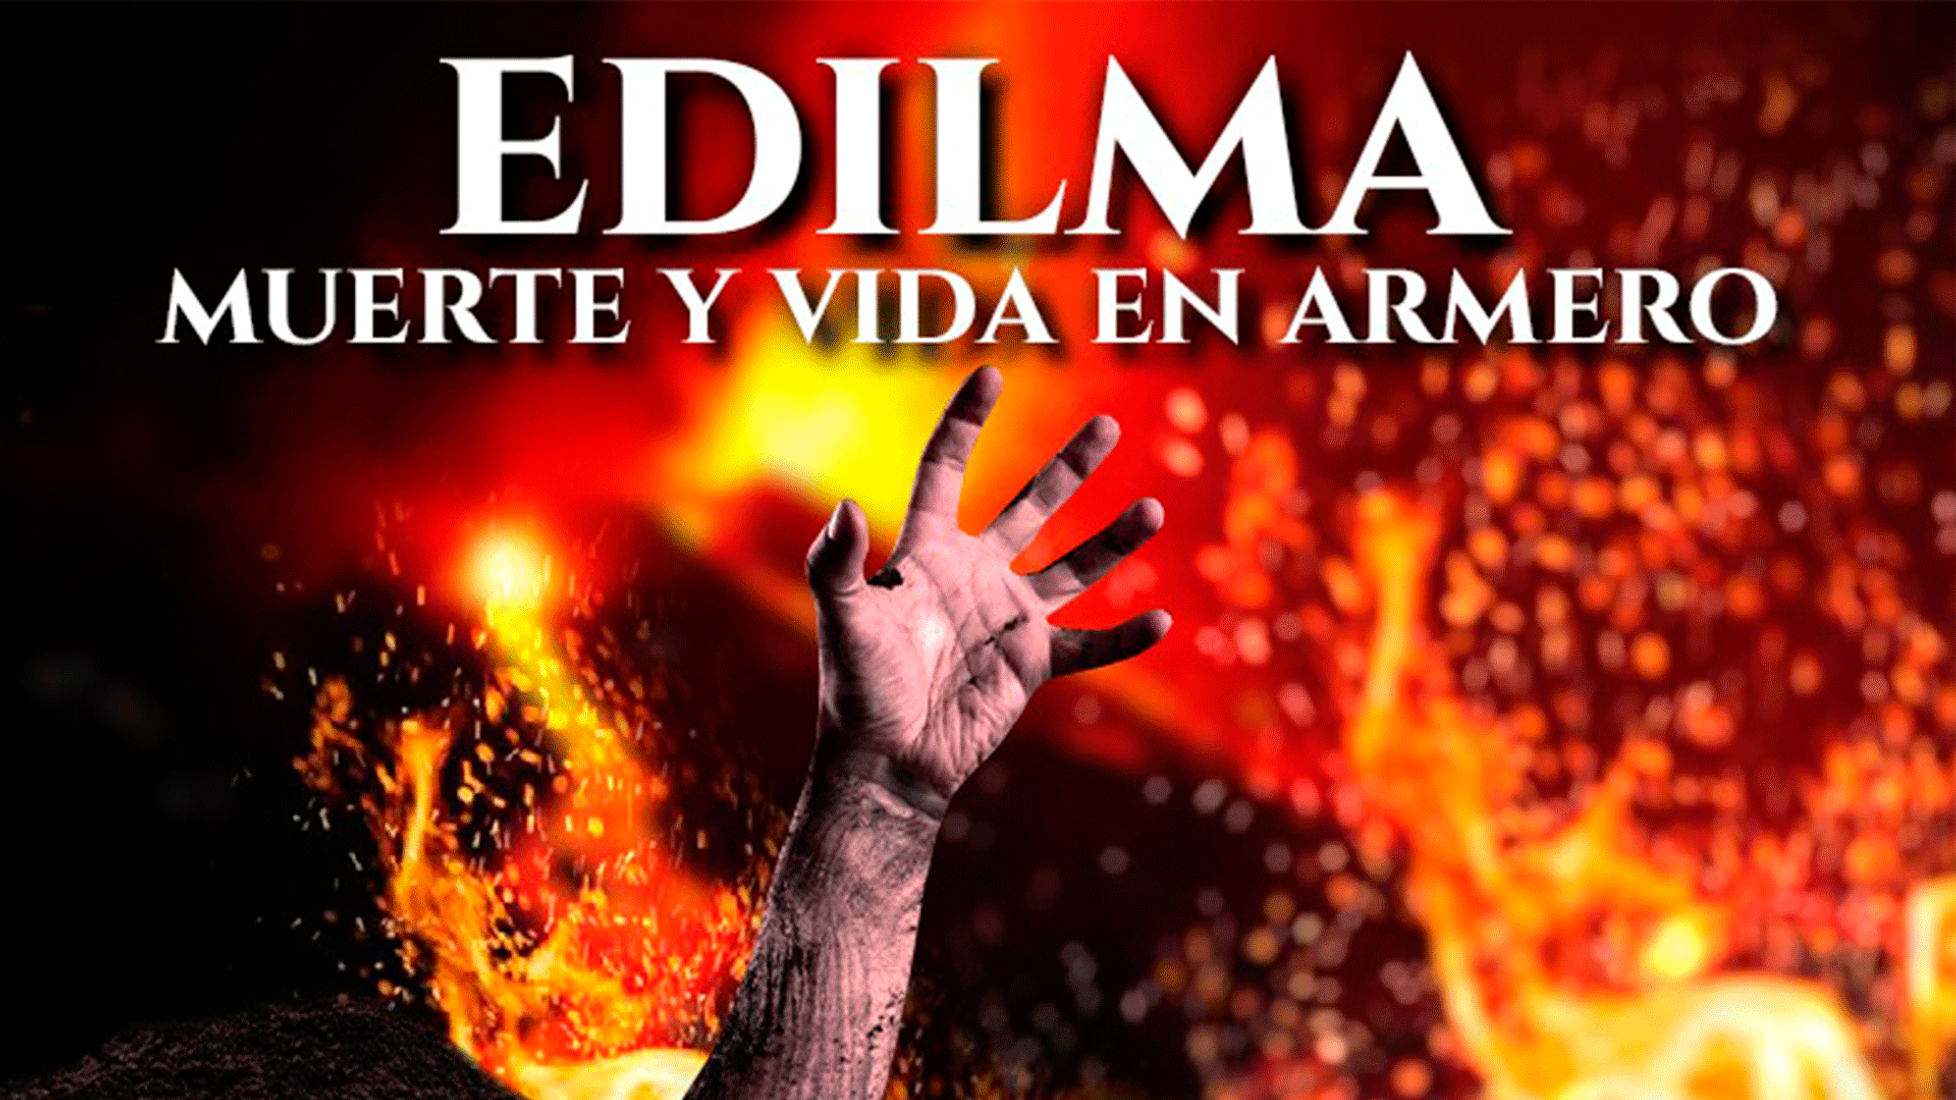 "EDILMA, muerte y vida en ARMERO"